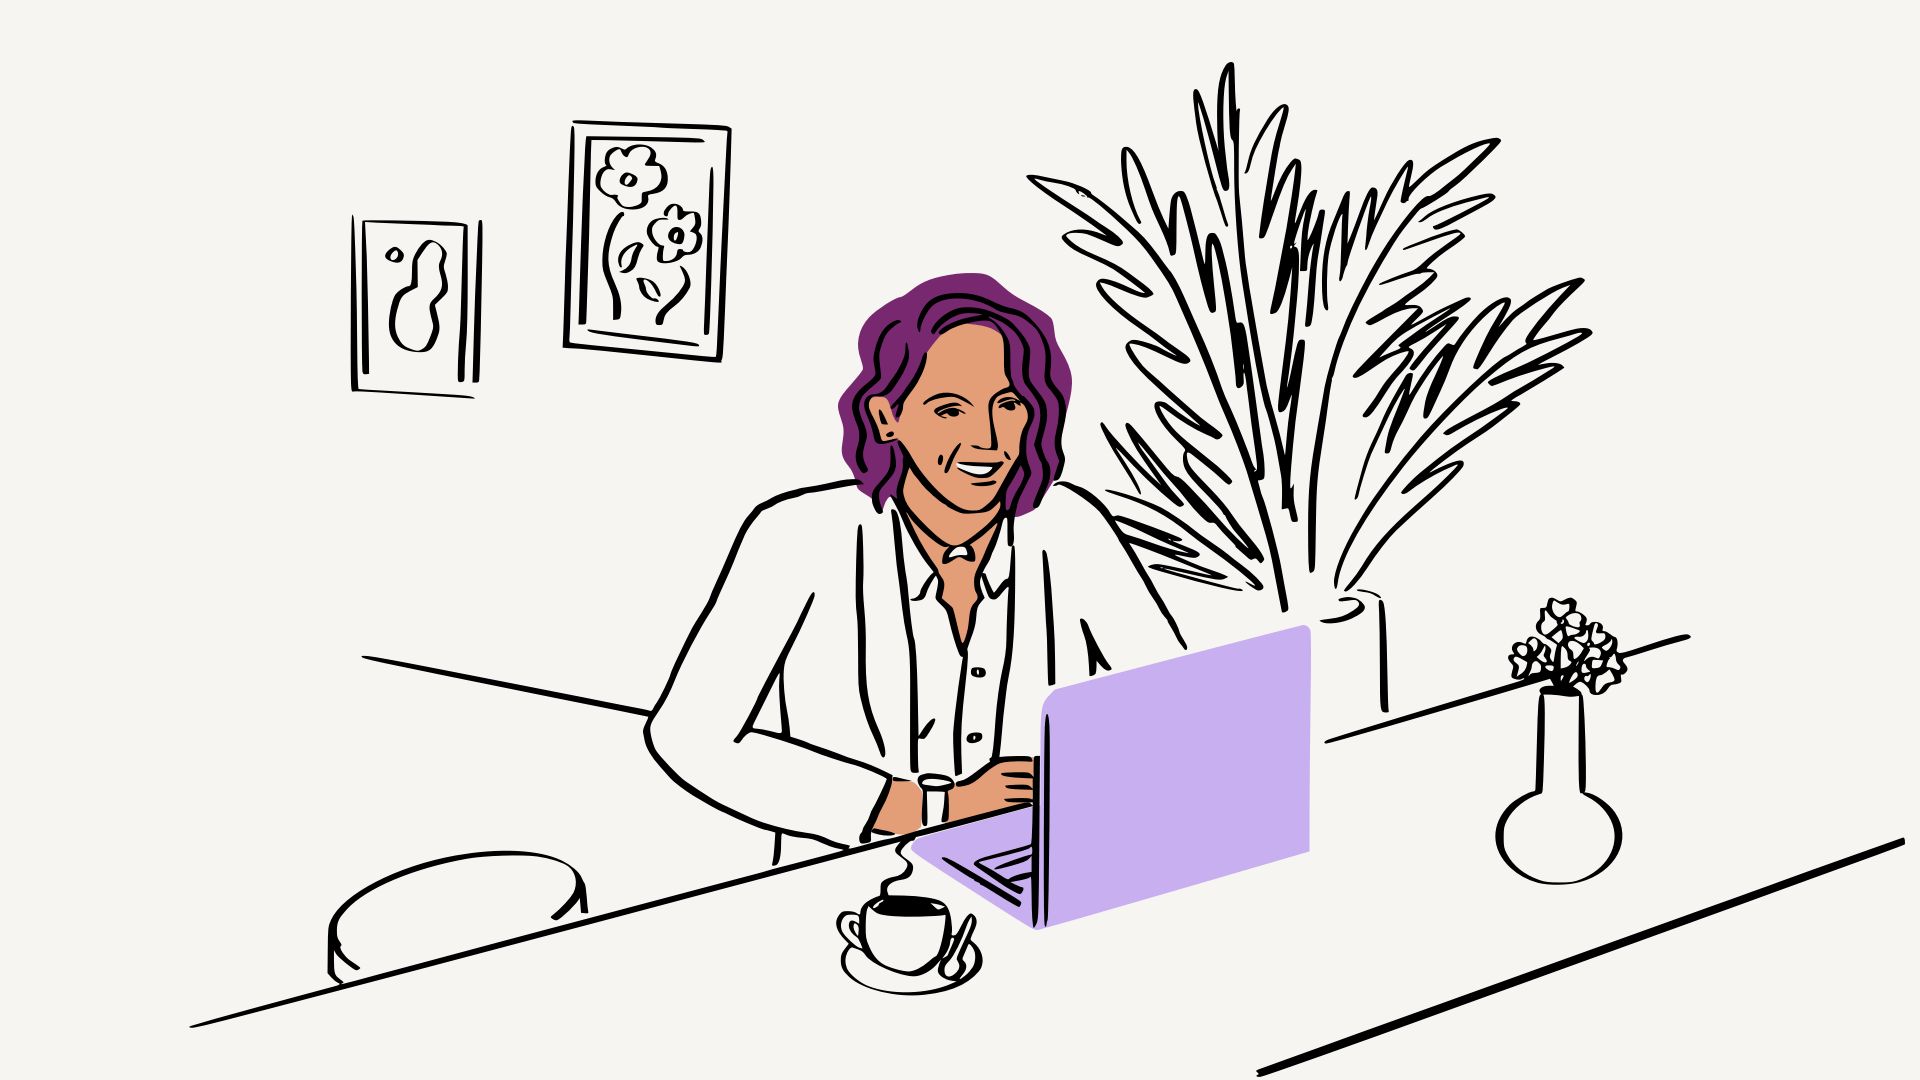 紫色のノート パソコンの前に座っている女性のイラスト